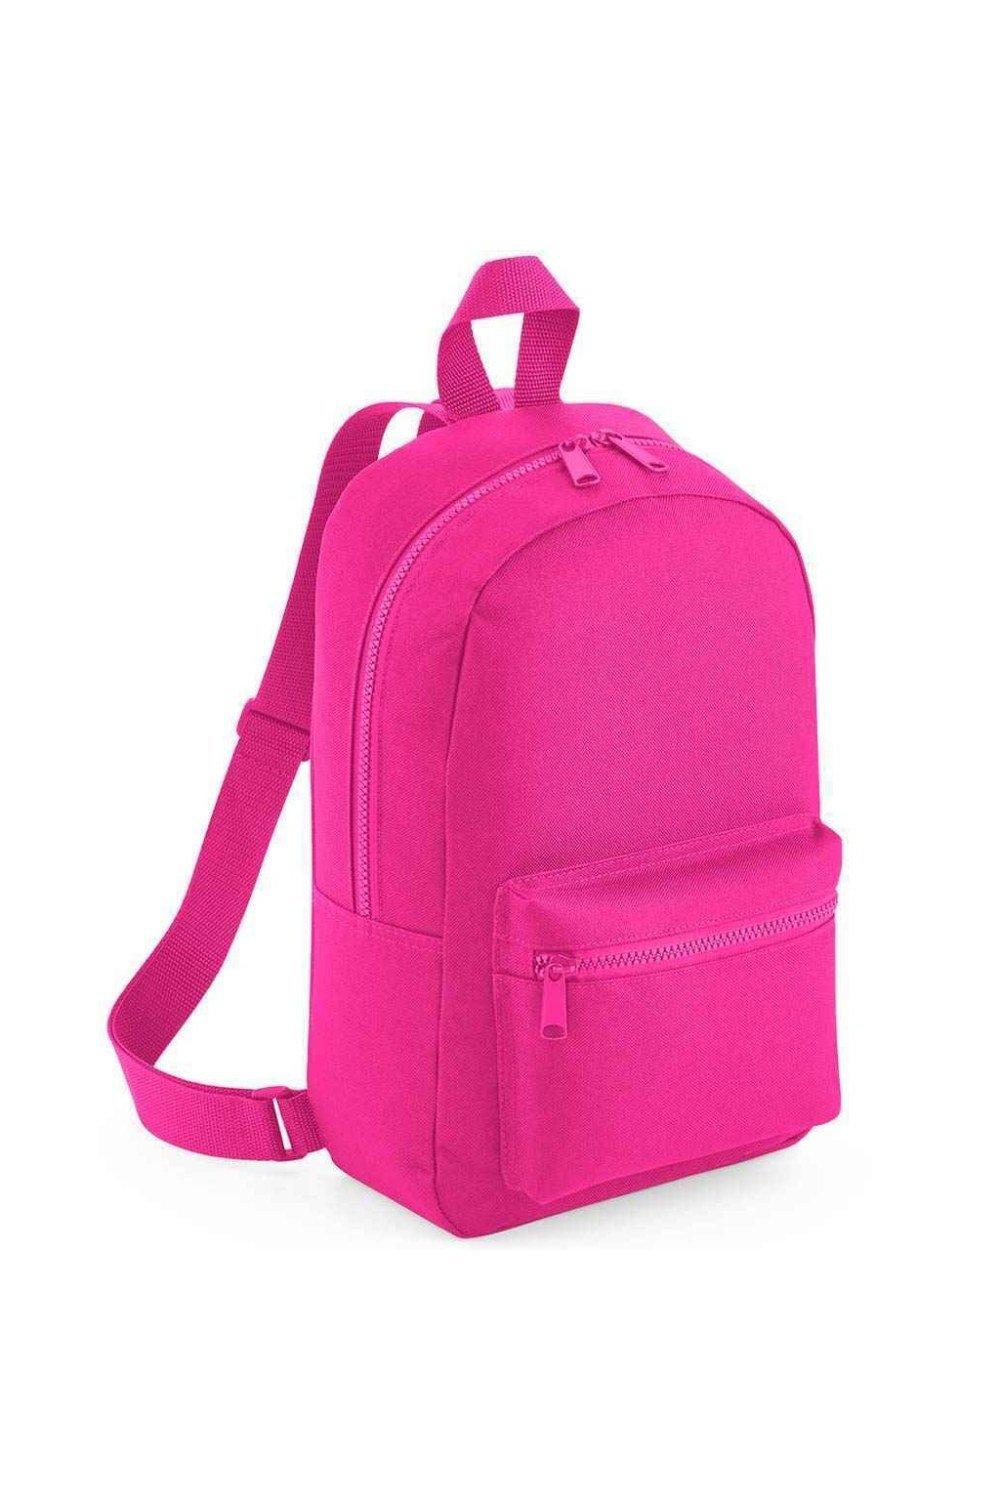 Мини-рюкзак Essential Fashion Bagbase, розовый емкость idea степ 1 7л 16х10х14см прямоугольная пластик